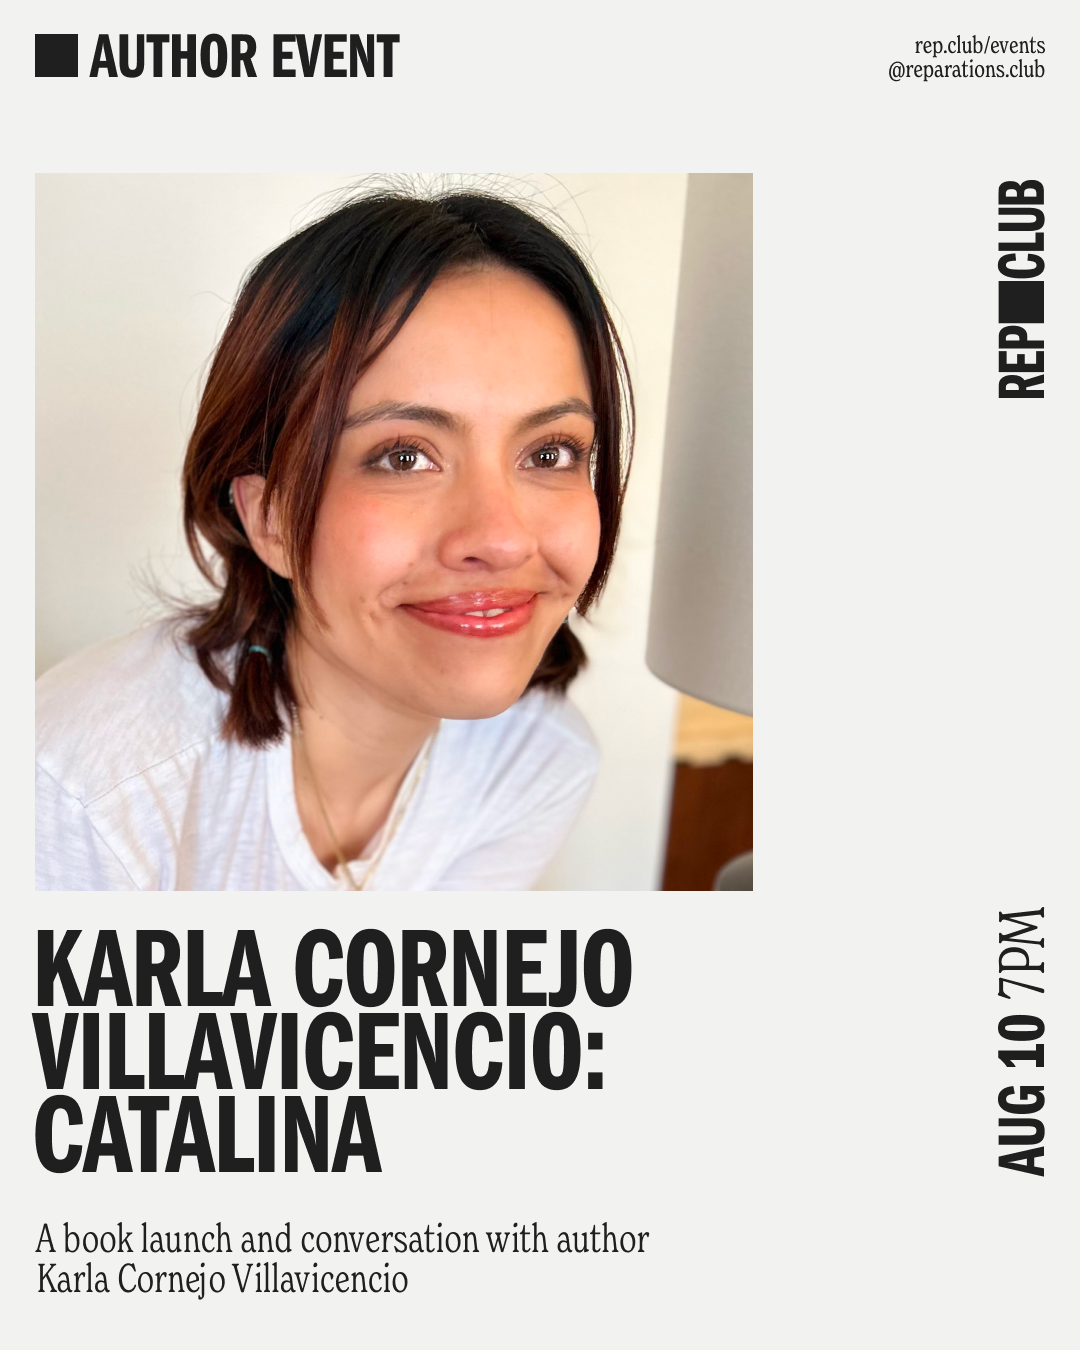 Aug 10th EVENT: Catalina // Karla Cornejo Villavicencio